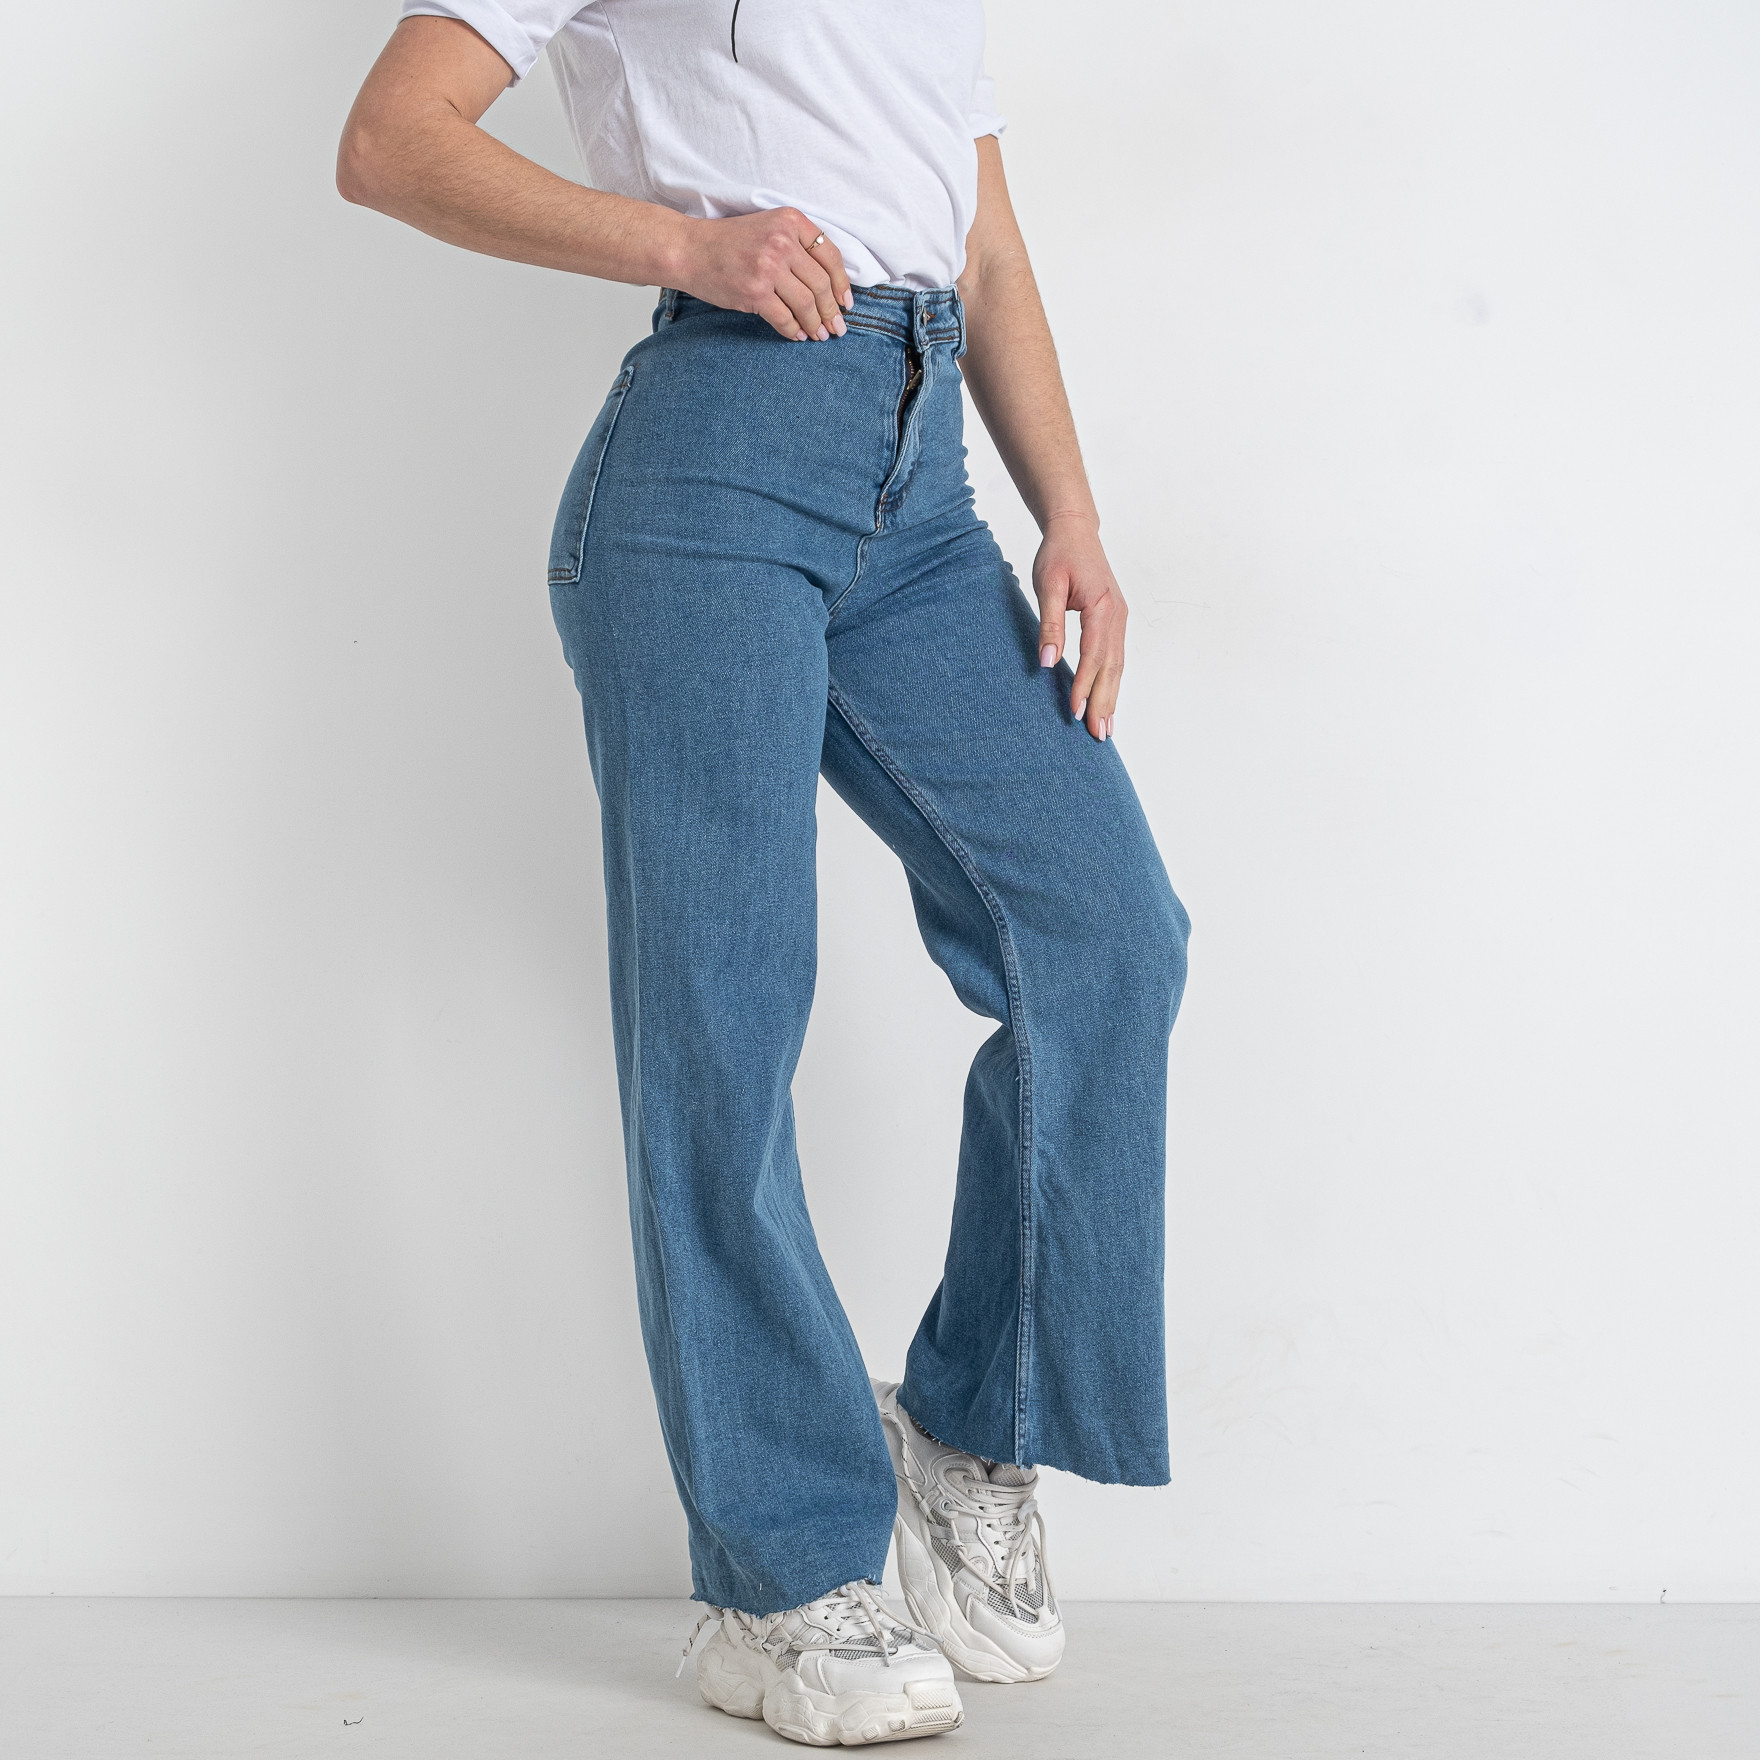 416-2021-2 синие женские джинсы (стрейчевые, 8 ед. размеры батал: 34. 36. 36. 38. 38. 40. 42. 44)